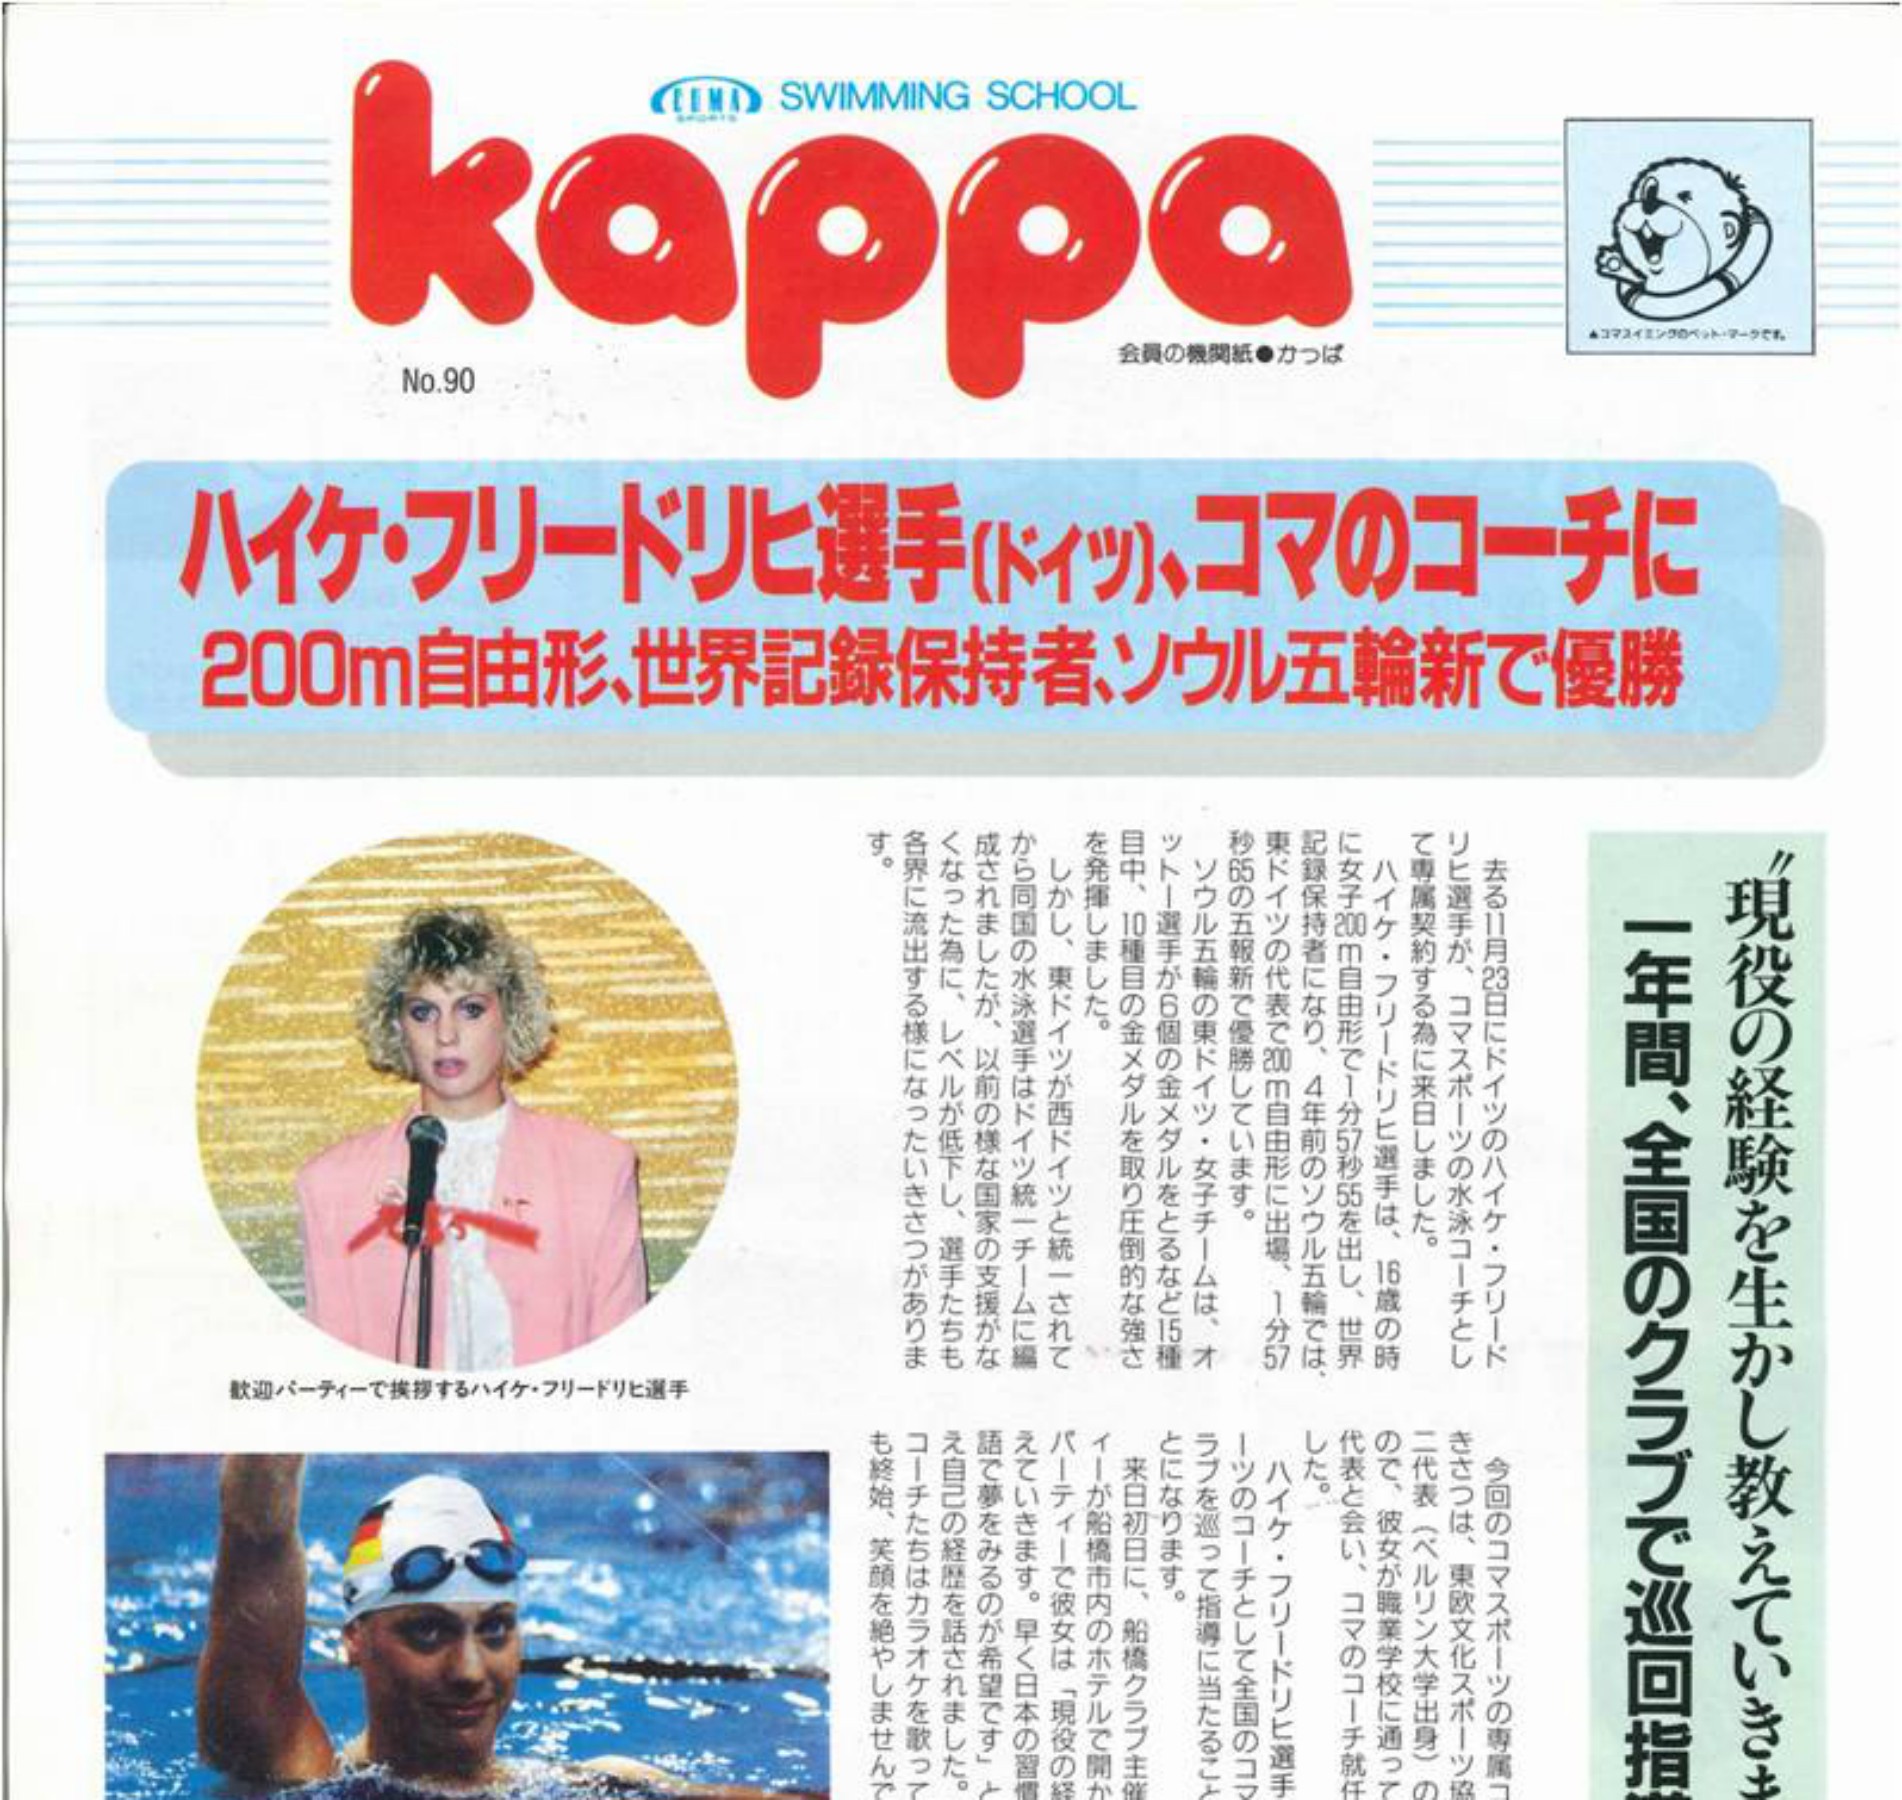 Vereinszeitschrift für Coma Swimming Club Japan 1992 (1)